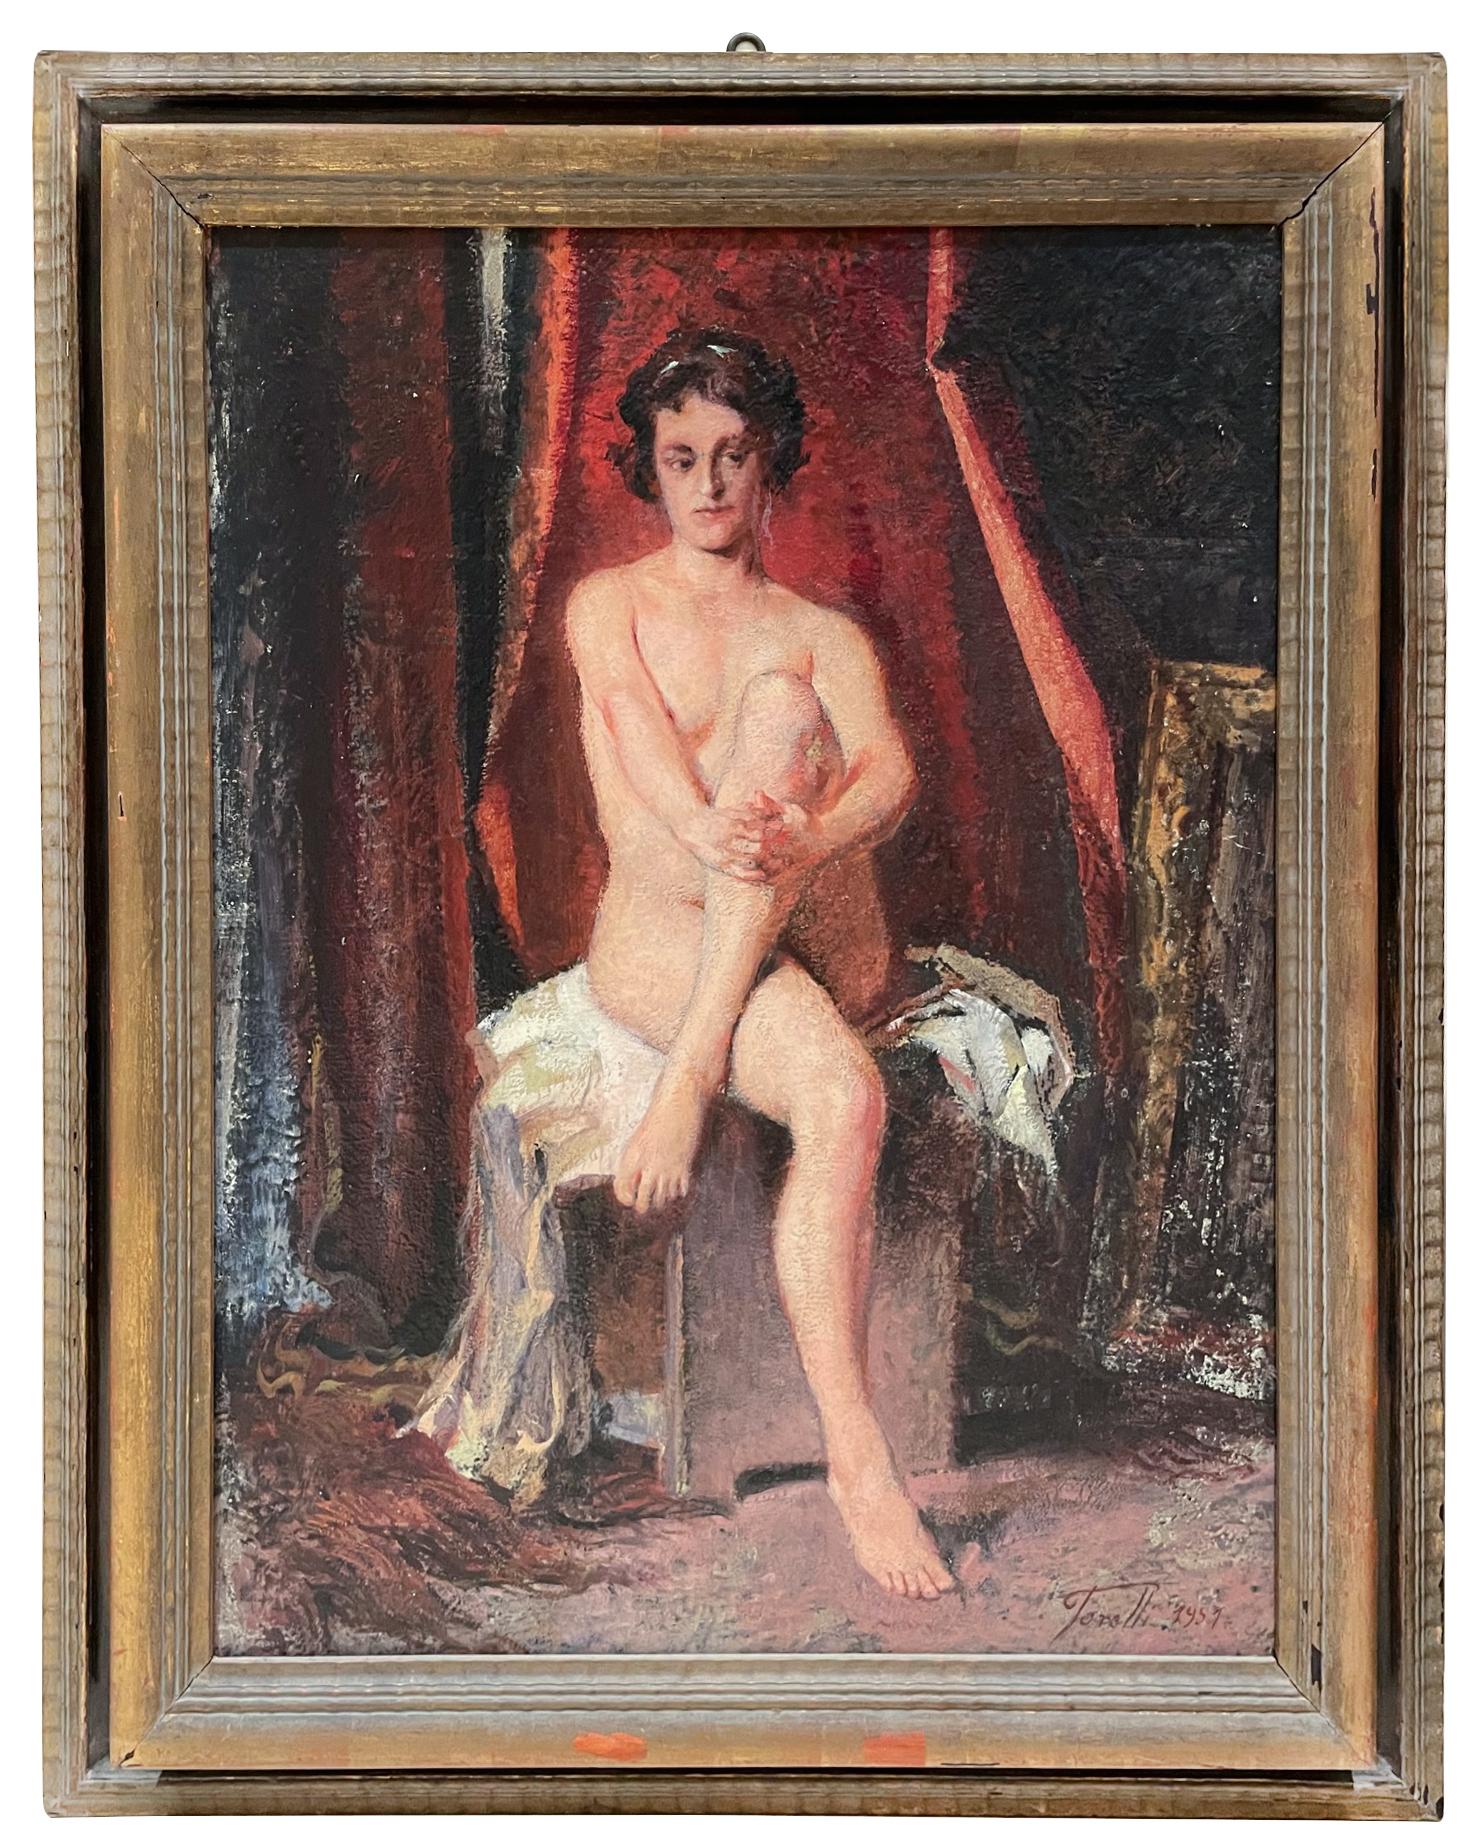 Der sitzende Akt ist ein Kunstwerk von Giuseppe Torelli aus den 1950er Jahren. 

Öl auf Karton.

64x48 cm mit Rahmen. 

Handsigniert am unteren rechten Rand.